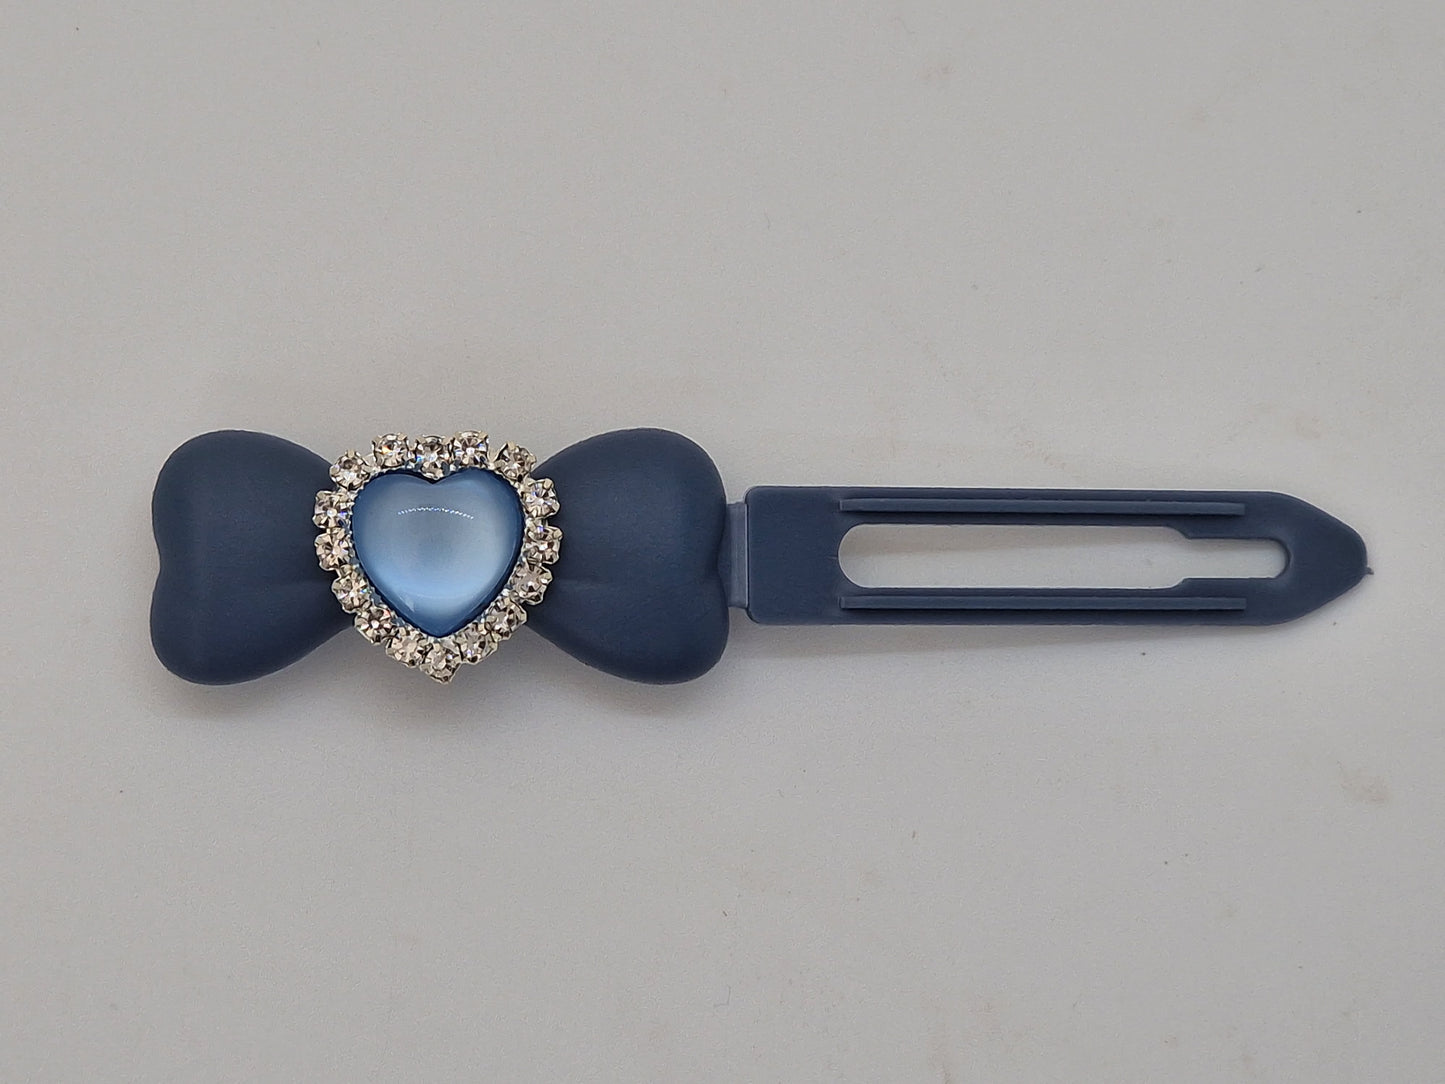 Herzspange mit Diamanten, 4,5 cm und 3,5 cm, neuartiger Clip.